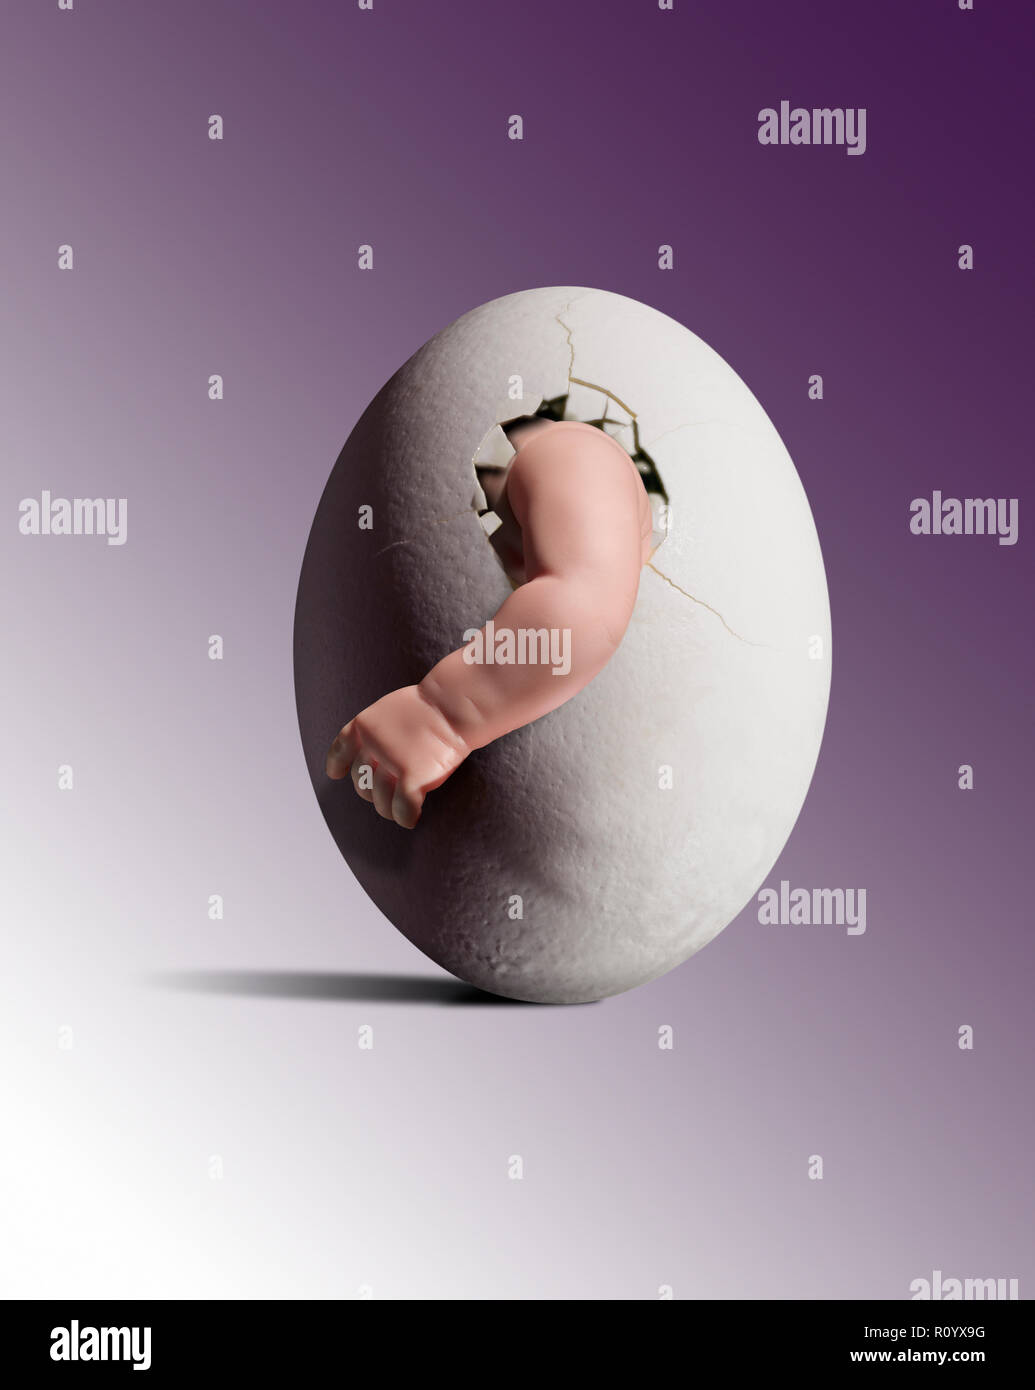 Menschliches baby arm aus gerissenen Surrogat ei gegen abgestuften Hintergrund Stockfoto